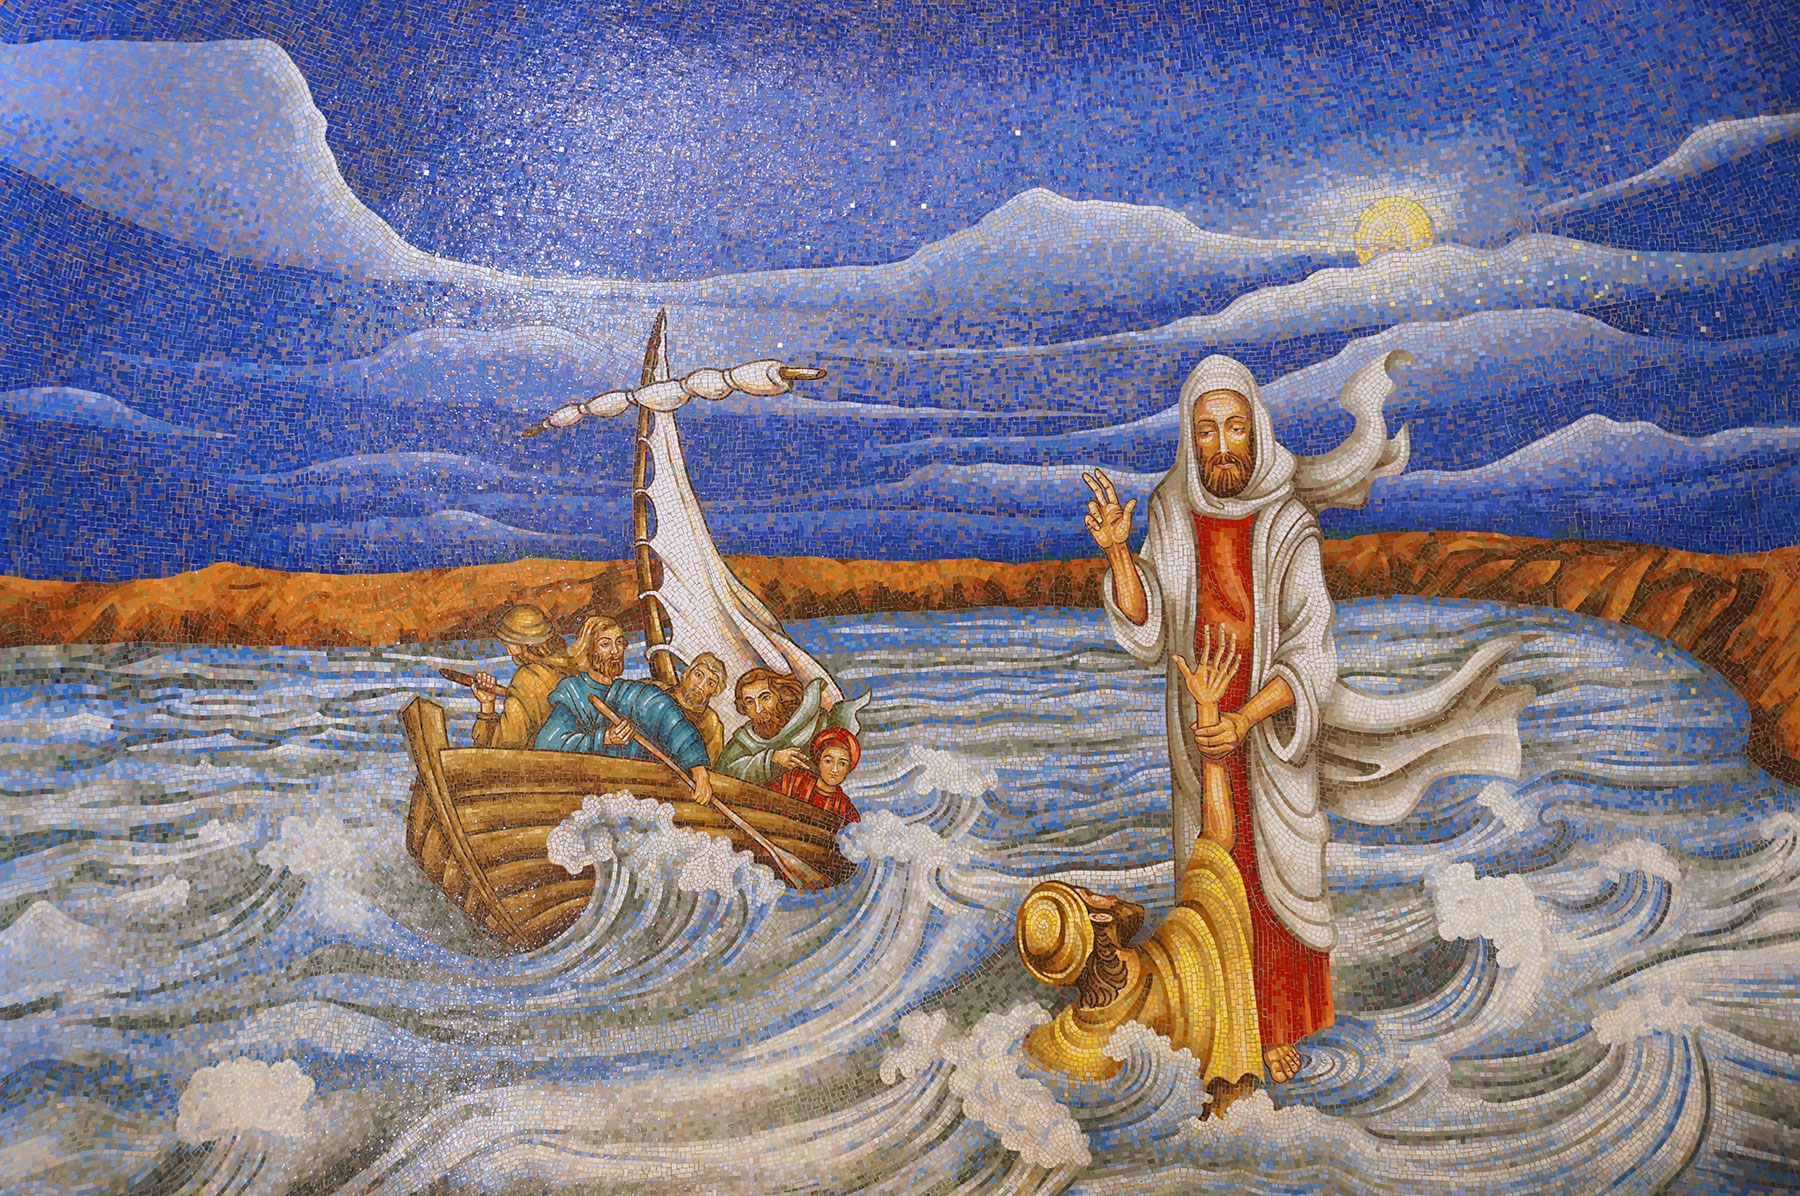 Jesus sagte: „Komm!“ Da stieg Petrus aus dem Boot und ging über das Wasser auf Jesus zu. – Mosaik in einer Seitenkapelle in der Kirche Duc in Altum in Mygdal, dem Wohnort Maria Magdalenas, am See Genezareth, Israel (Foto: Brehm)